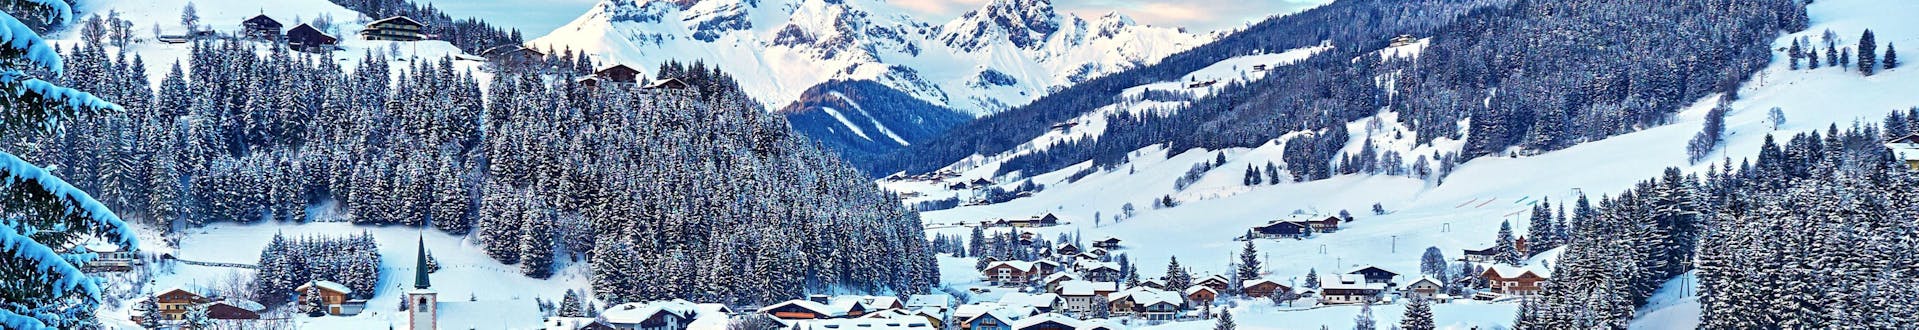 Città di Filzmoos, Austria, vicino alle piste dove è possibile prenotare lezioni di sci.